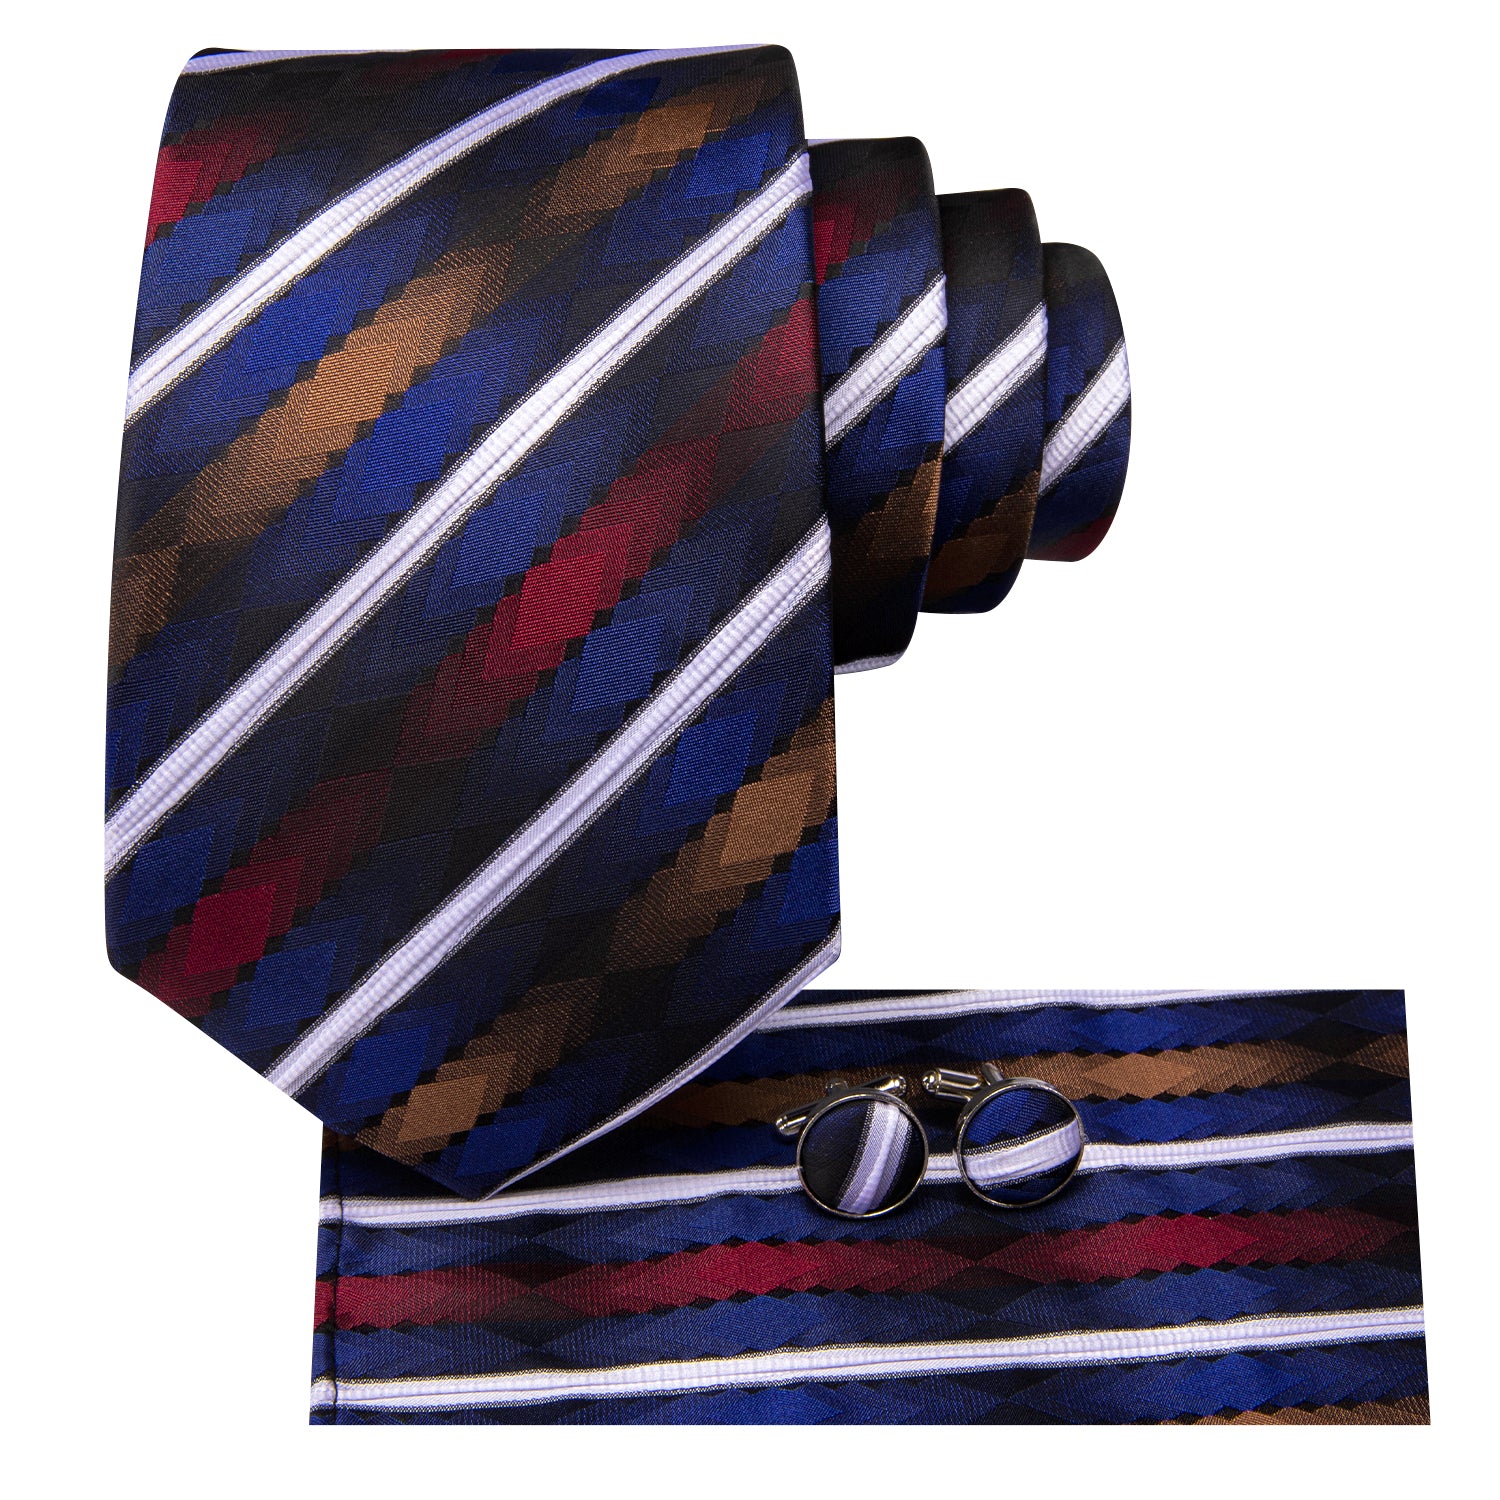 Hi-Tie White Blue Striped Novelty Men's Tie Pocket Square Cufflinks Set